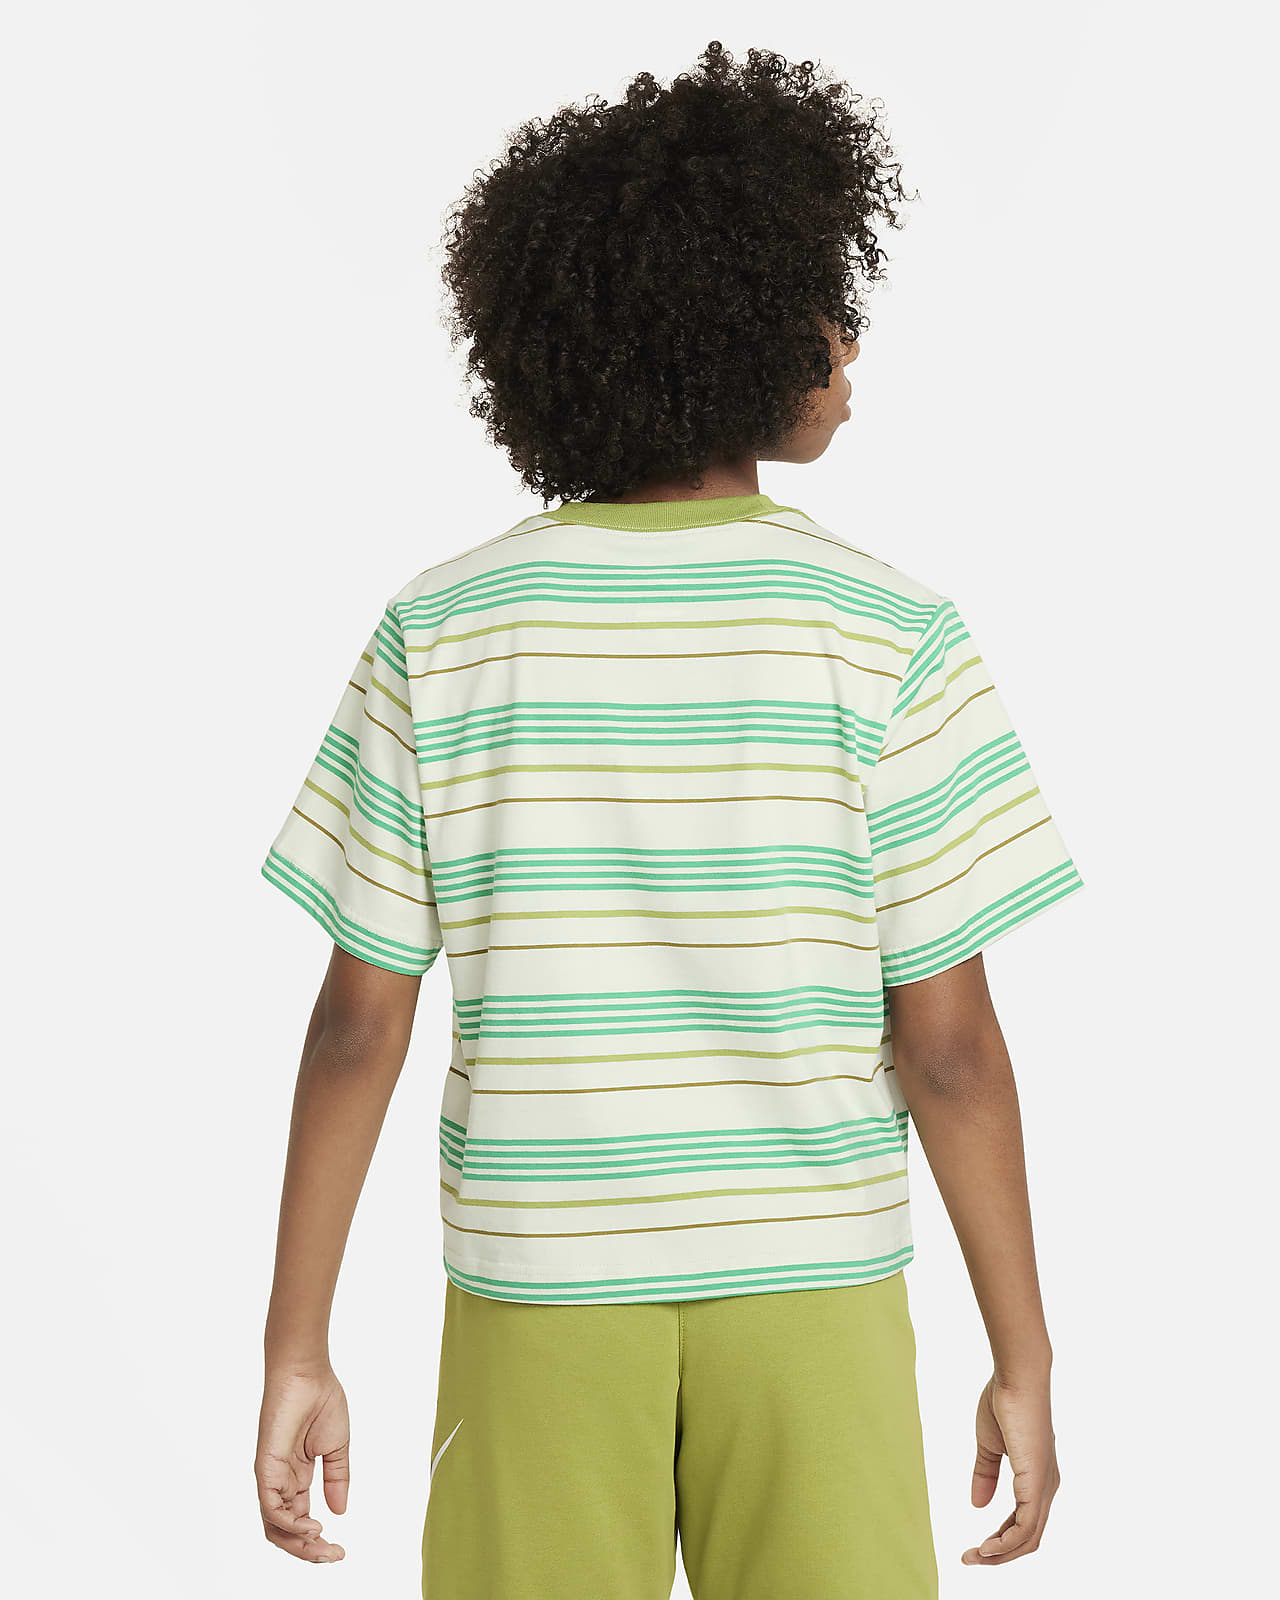 Nike Sportswear Essentials+ T-Shirt. Big (Girls\') Boxy Kids